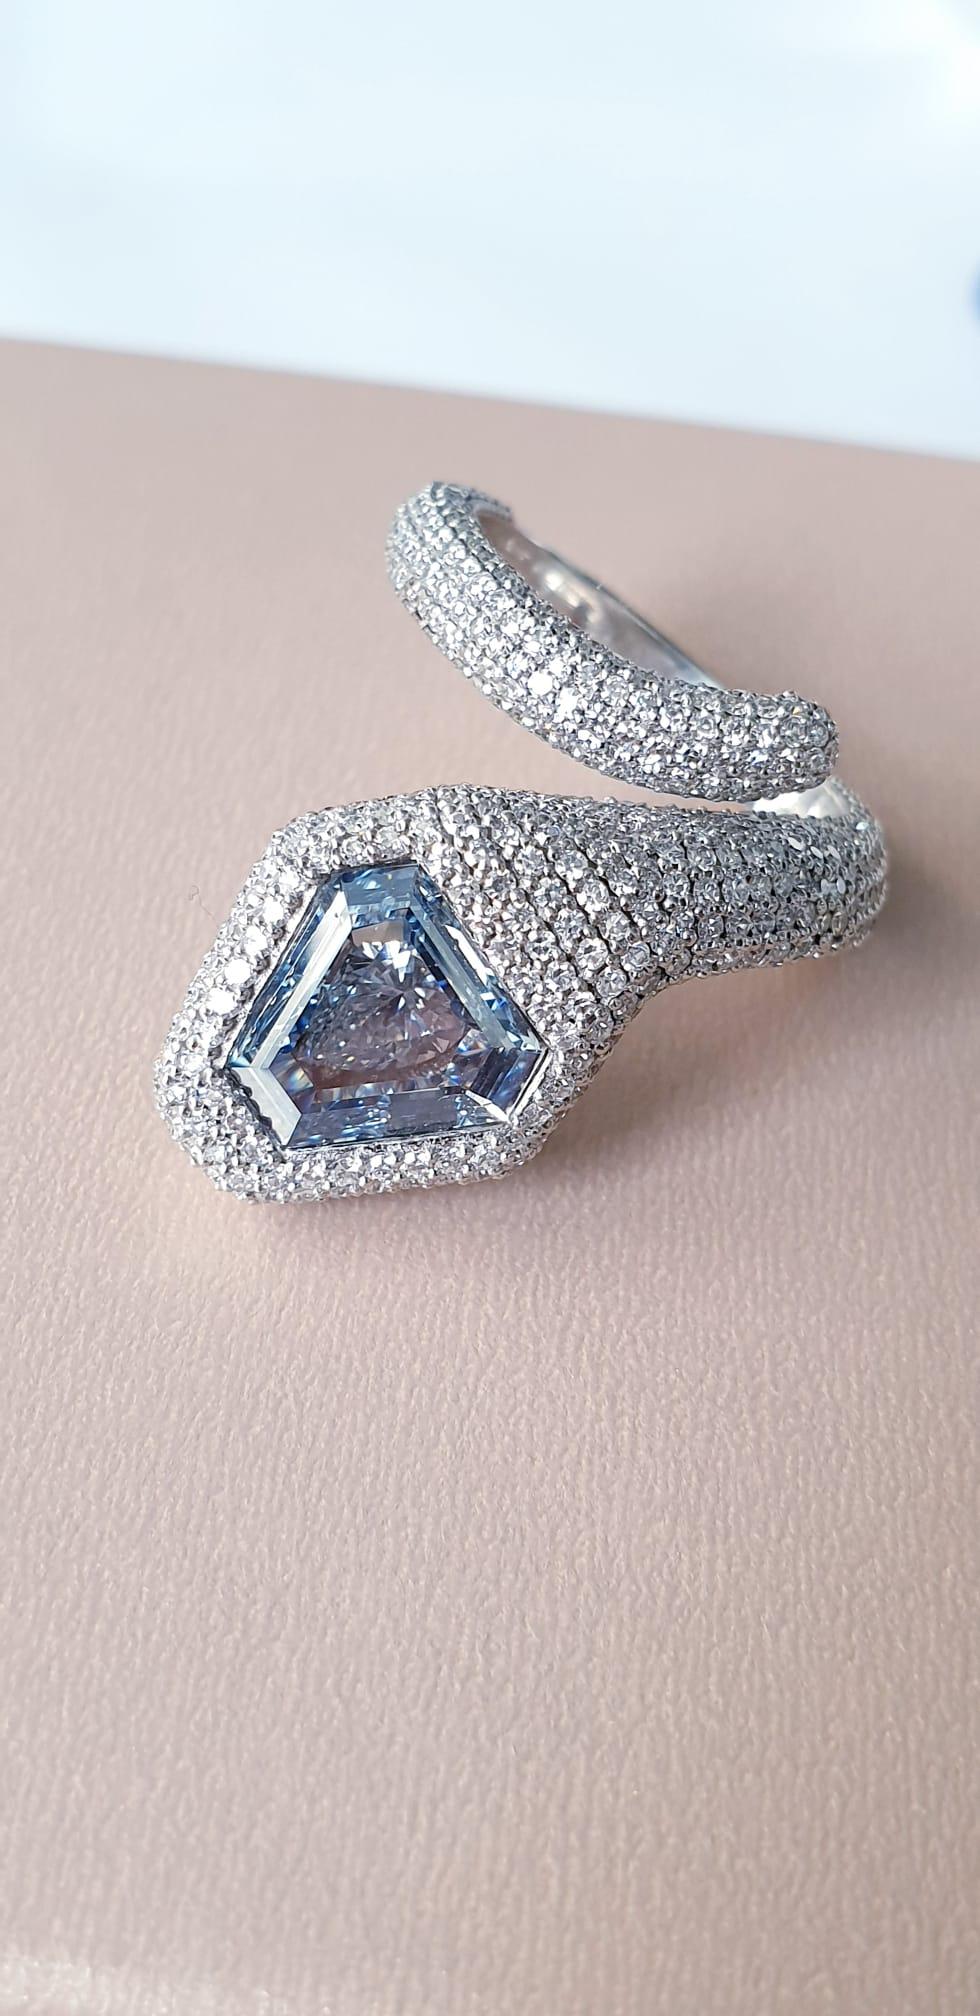 De la chambre forte du musée à la bijouterie Emilio ! de New York,

Pierre principale : Diamant certifié GIA, de couleur naturelle bleu pur intense, taille bouclier, sans tonalité, serti au centre d'un peu plus de 1,25 carats. De manière assez